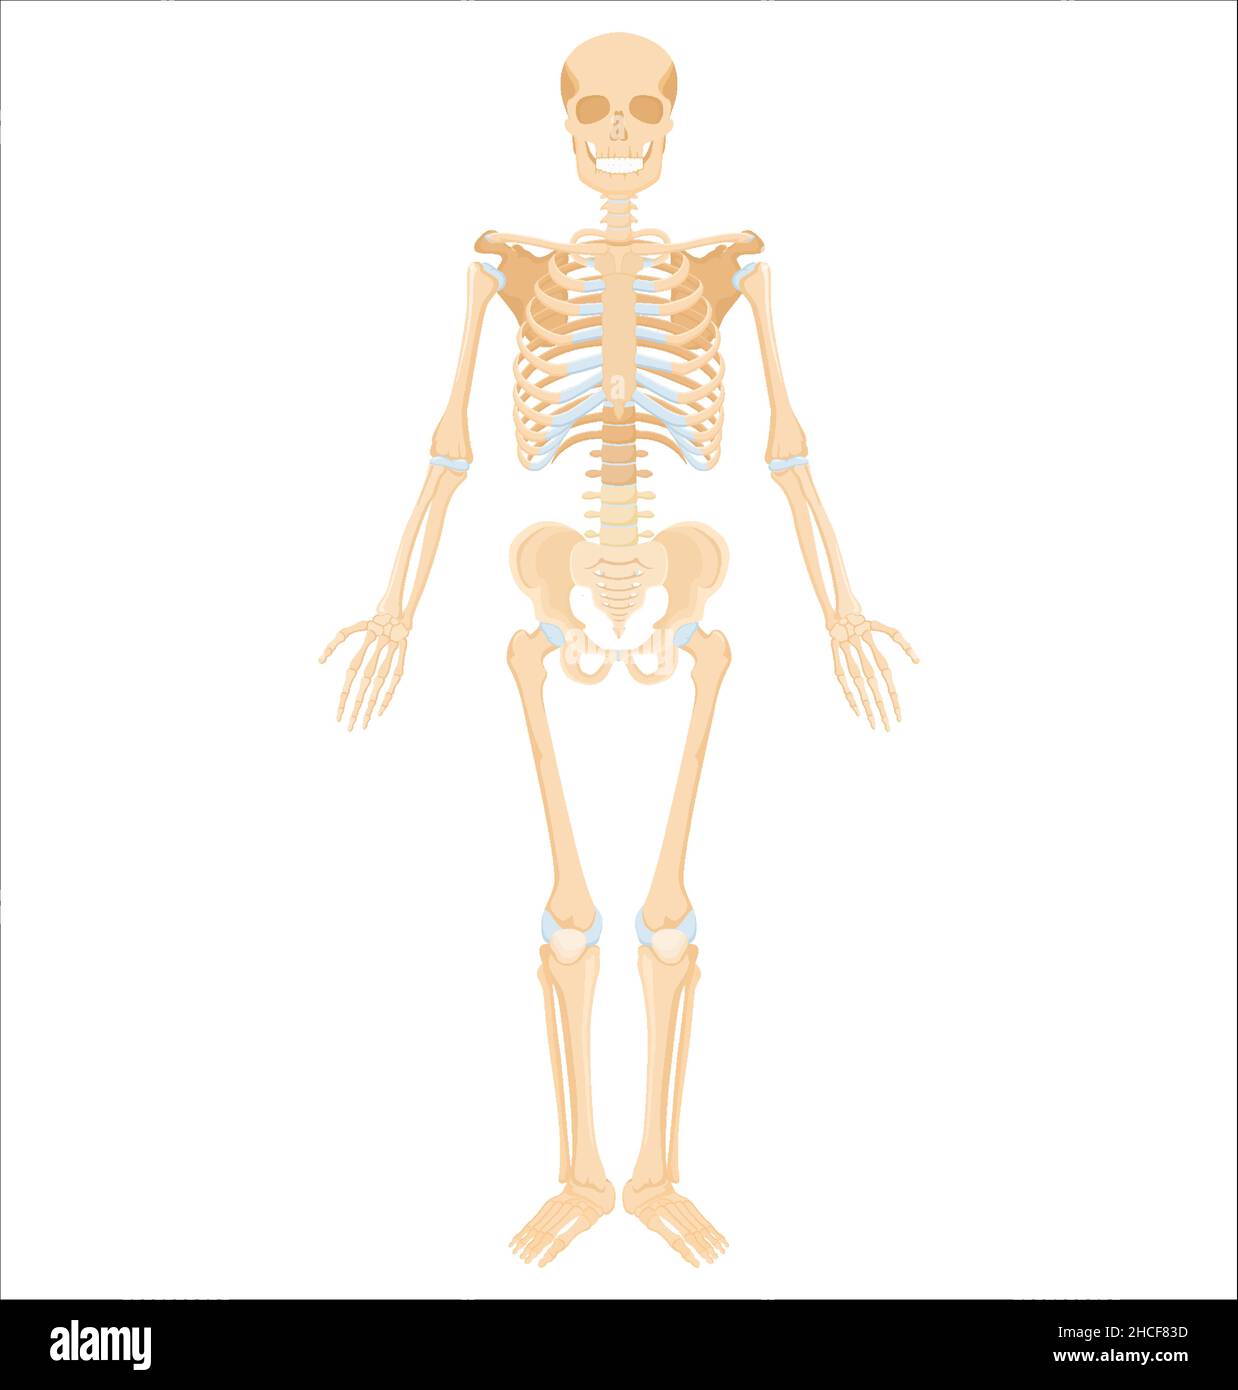 Scheletro umano. Banner anatomico medico. Ossa gialle realistiche degli  arti o del cranio, tronco con colonna vertebrale e costole. Vista frontale  del sistema scheletrico isolato Immagine e Vettoriale - Alamy